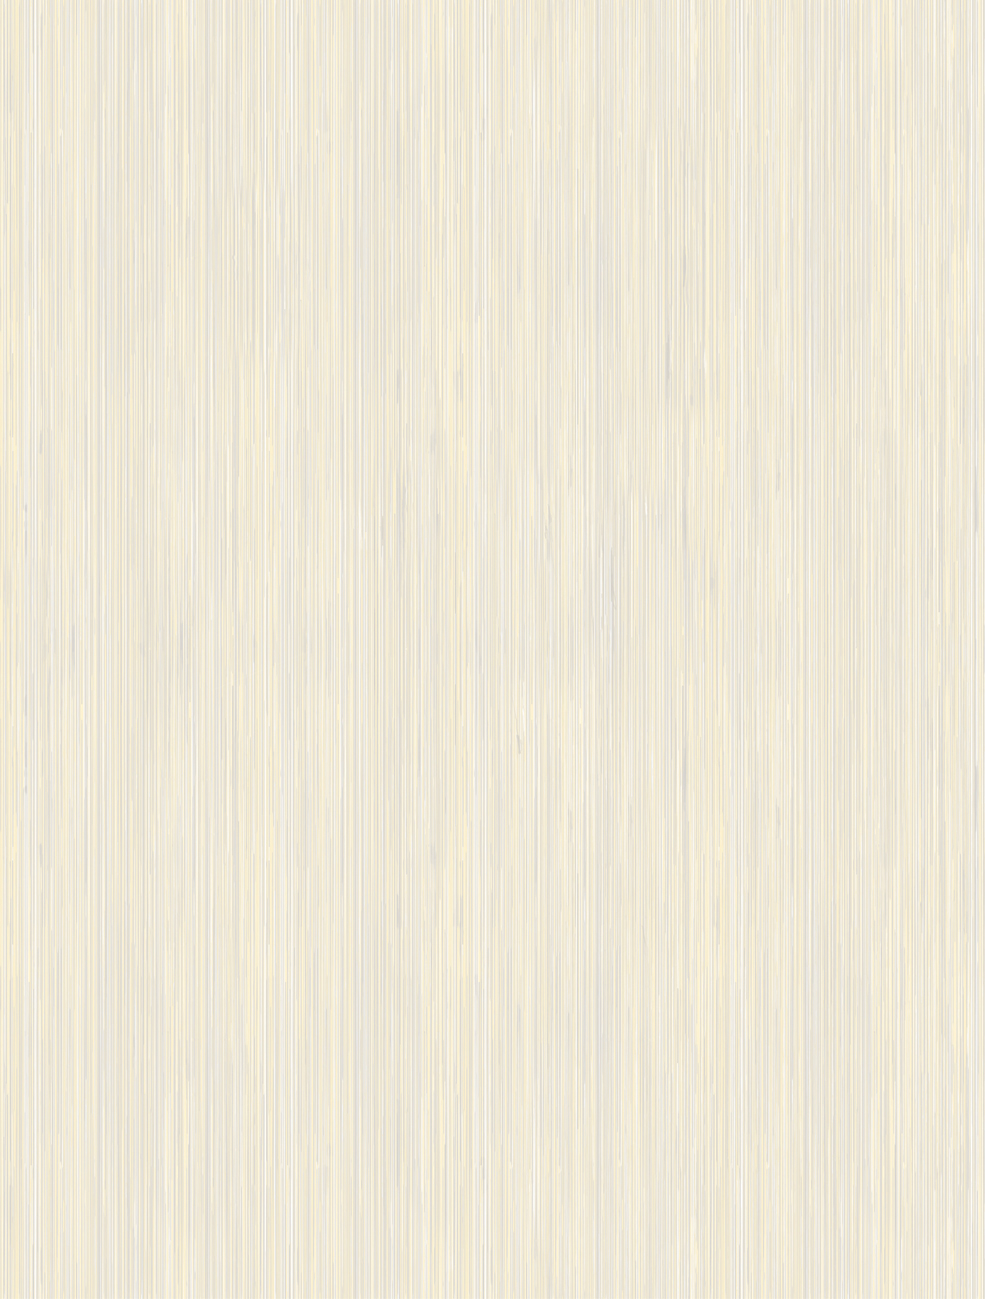 Л6105 Velvet (Вельвет) бежевый плитка д/стен верх 25х33, Golden Tile